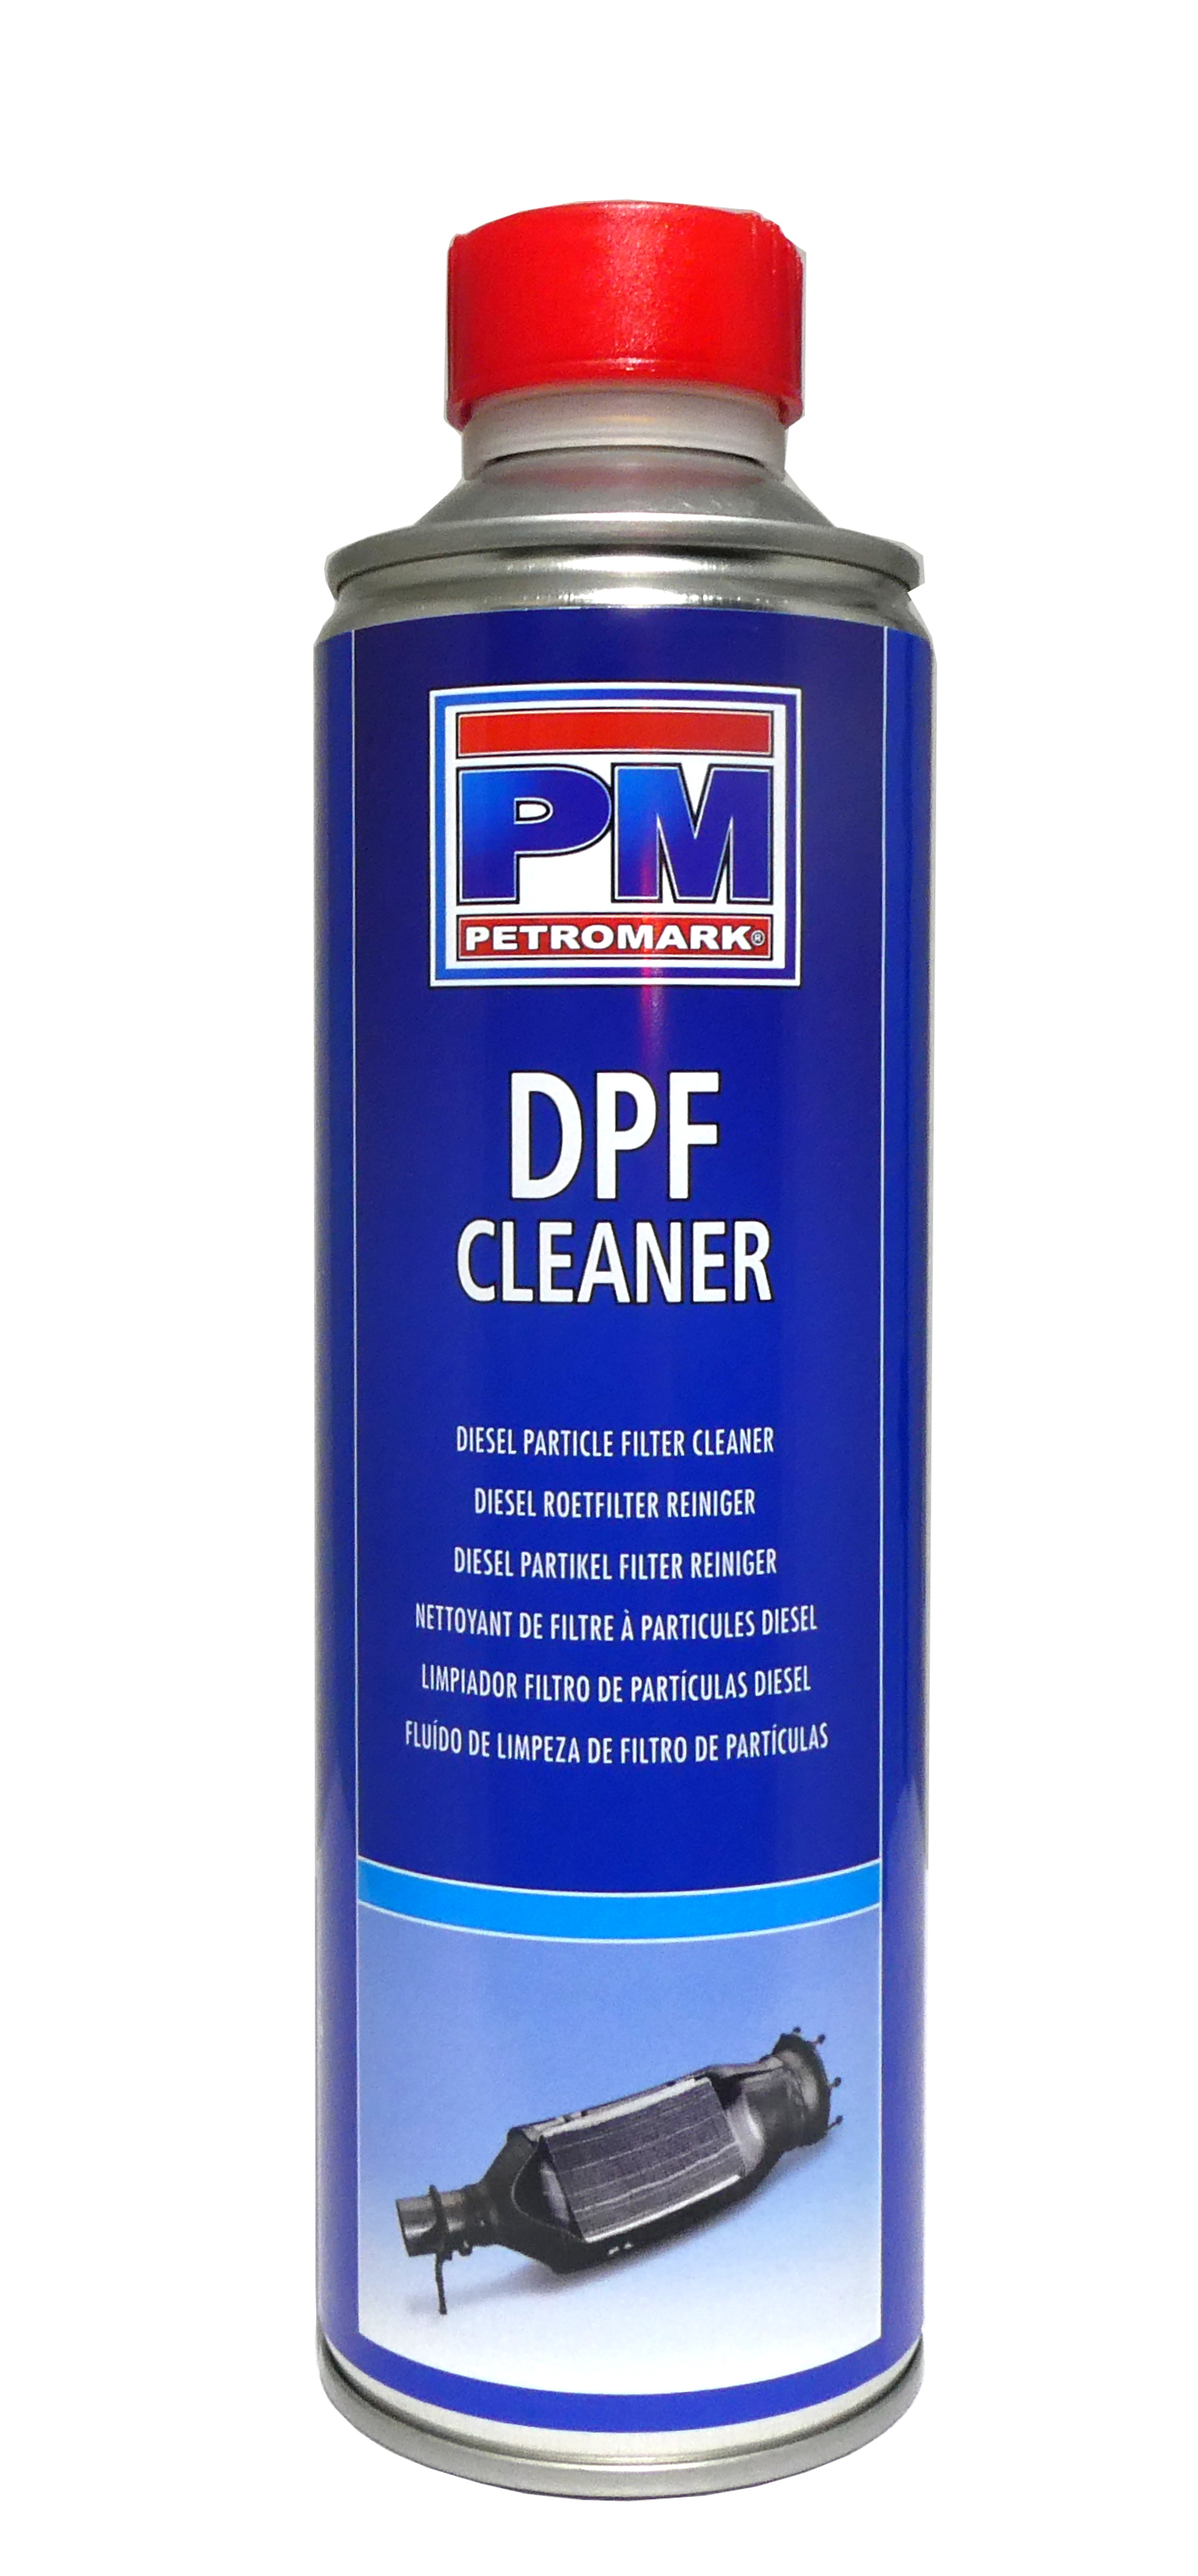  Dpf Cleaner - 1 Étoile & Plus